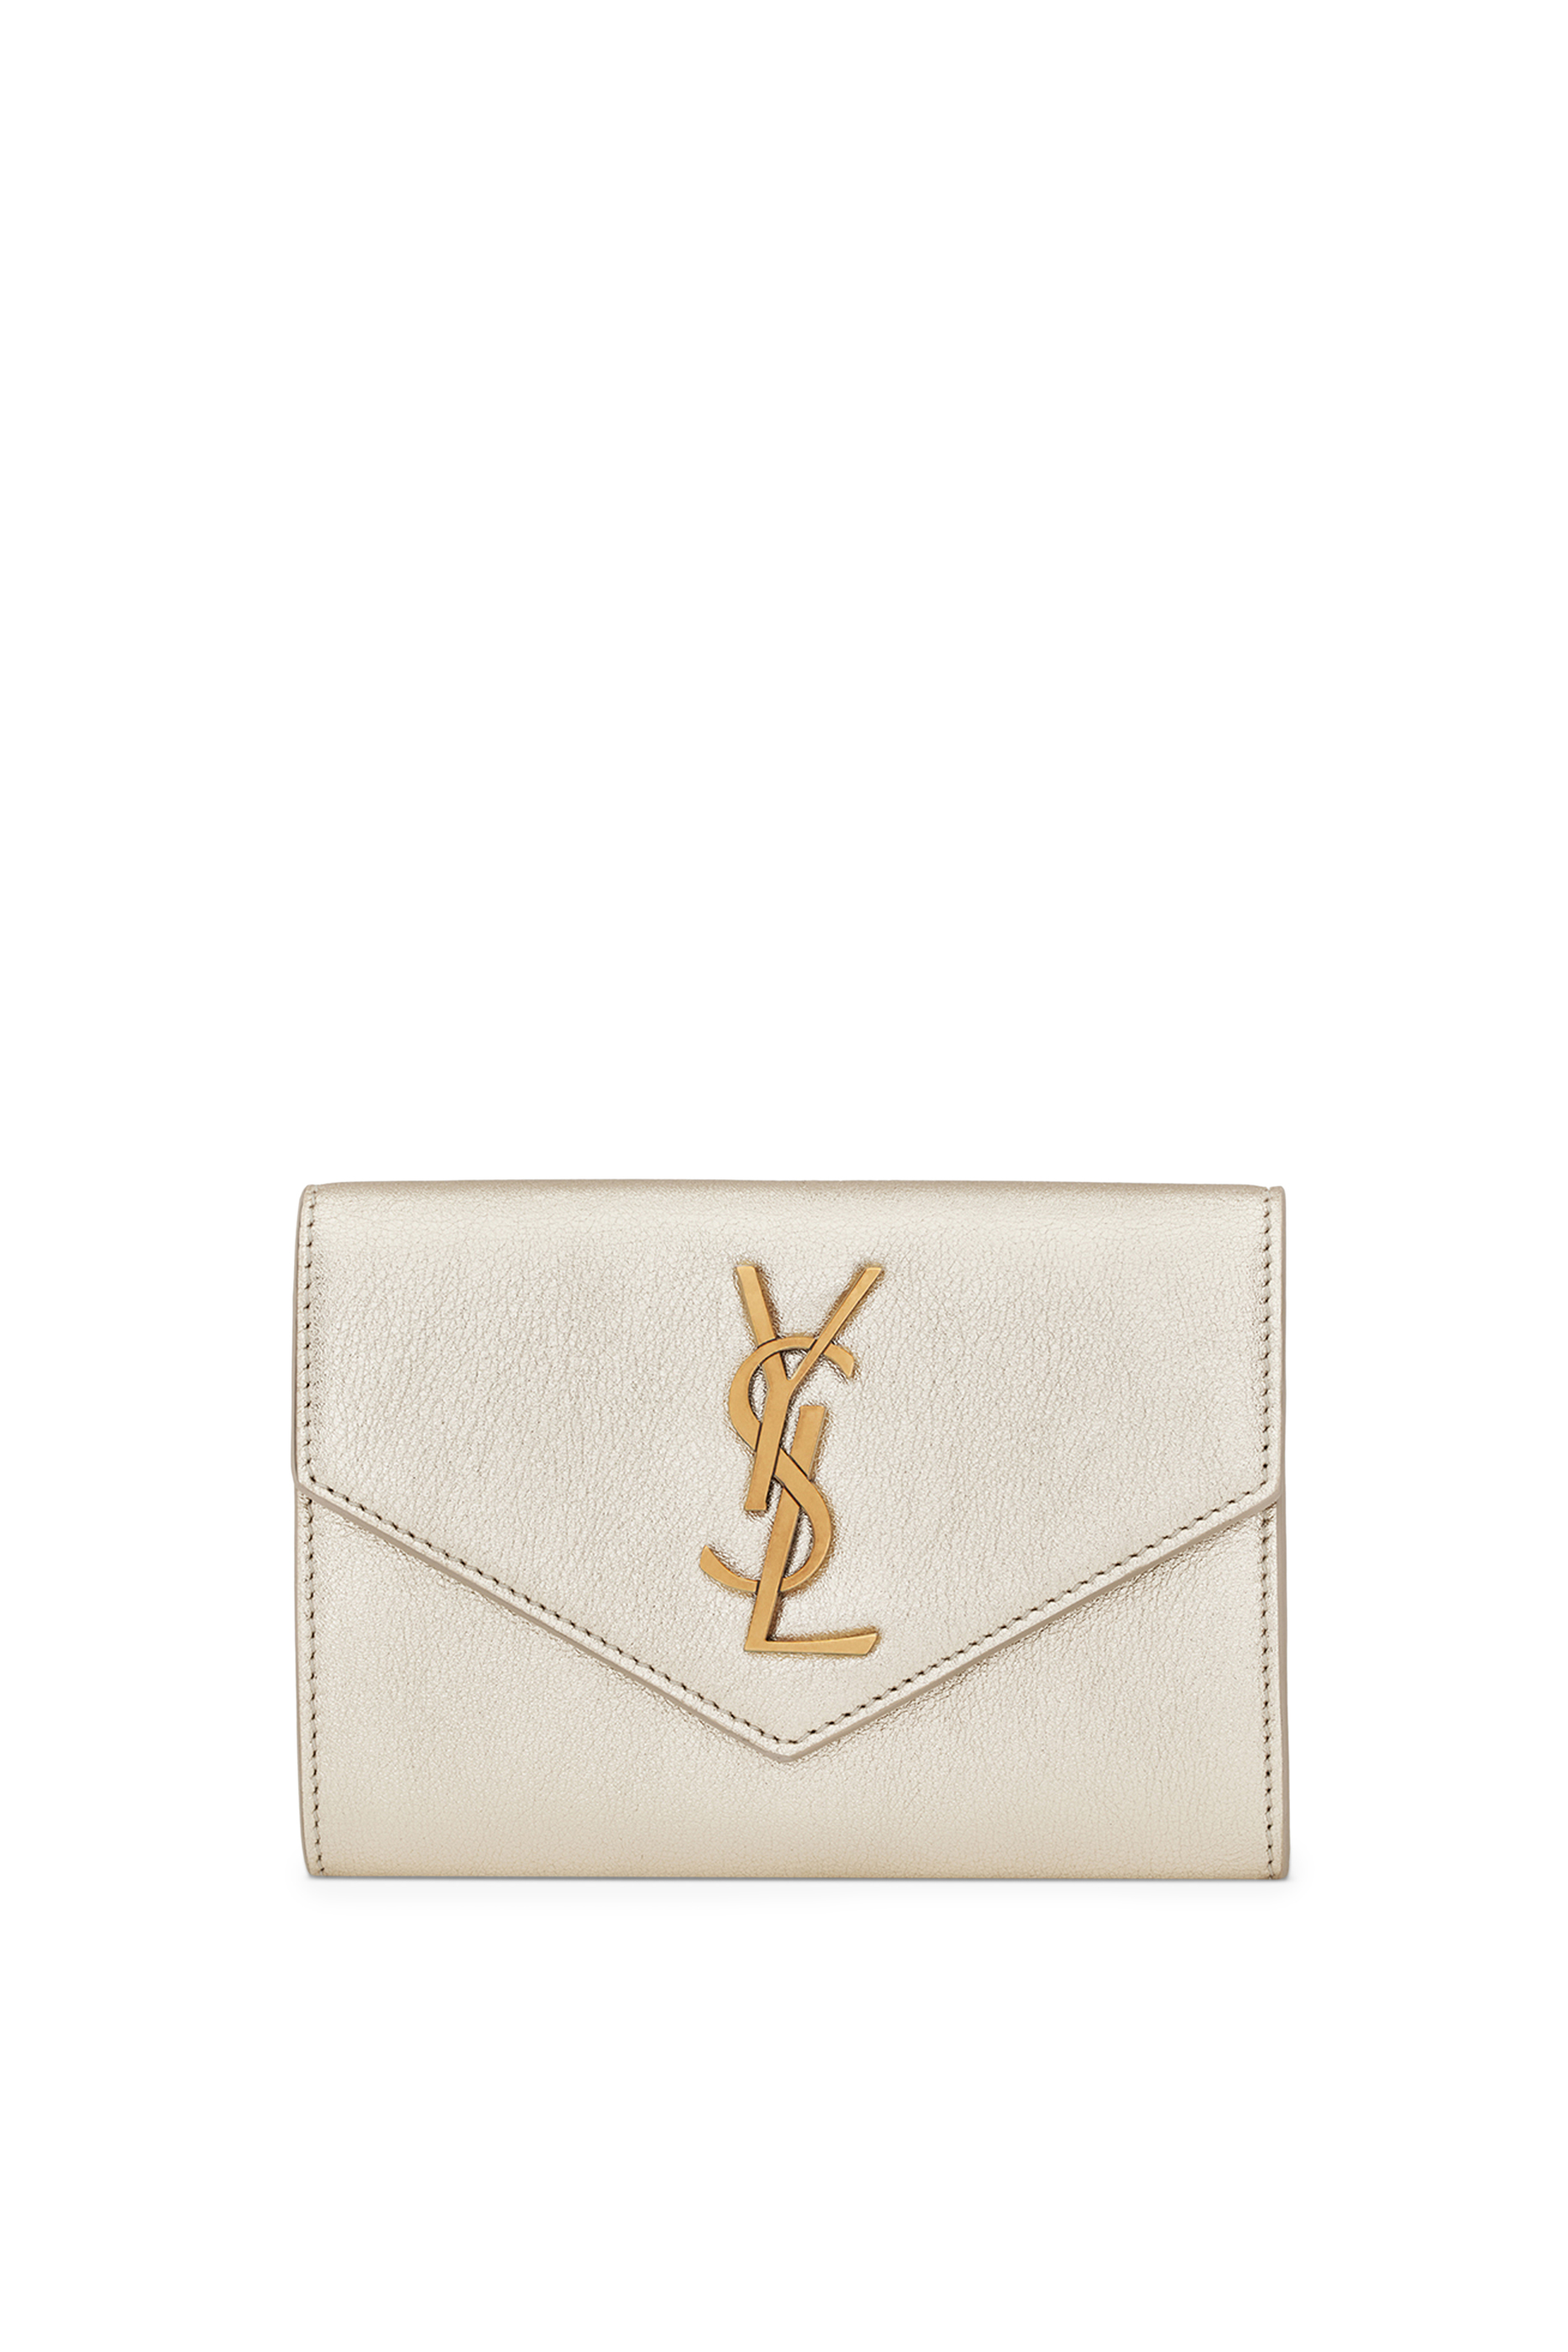 Buy Saint Laurent Small Envelope Wallet for Womens | Bloomingdale's UAE